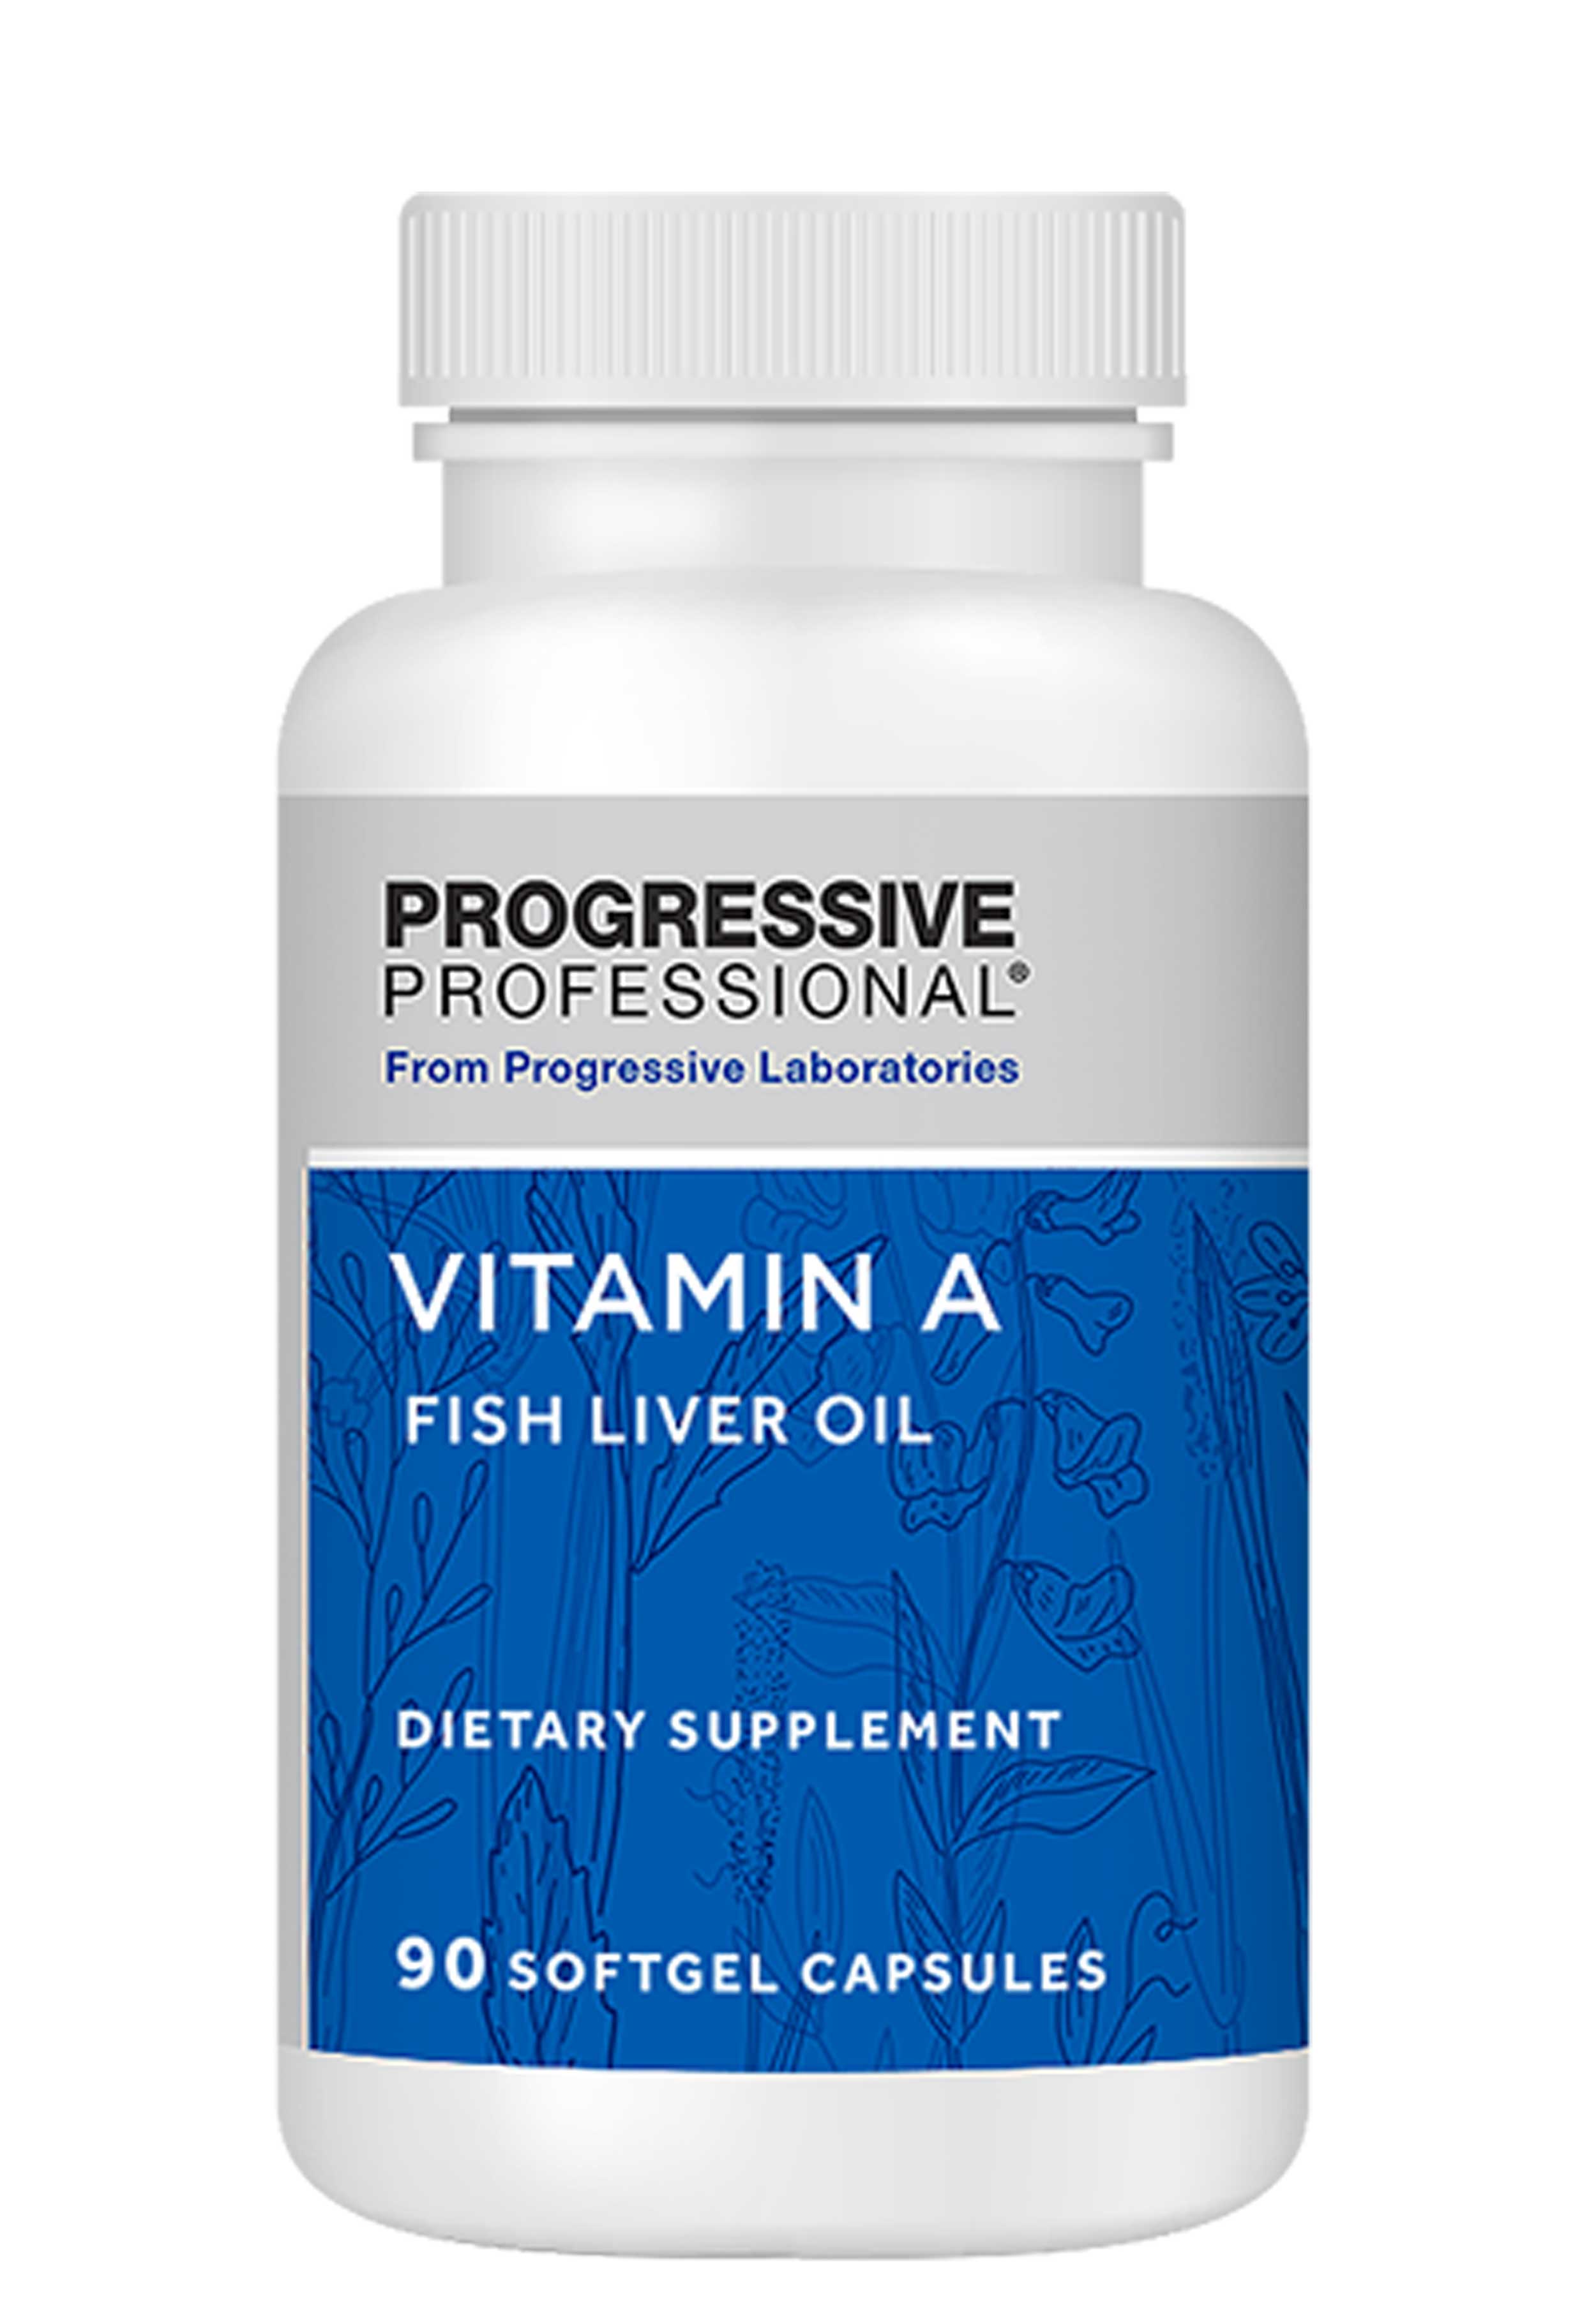 Progressive Laboratories Vitamin A Fish Liver Oil